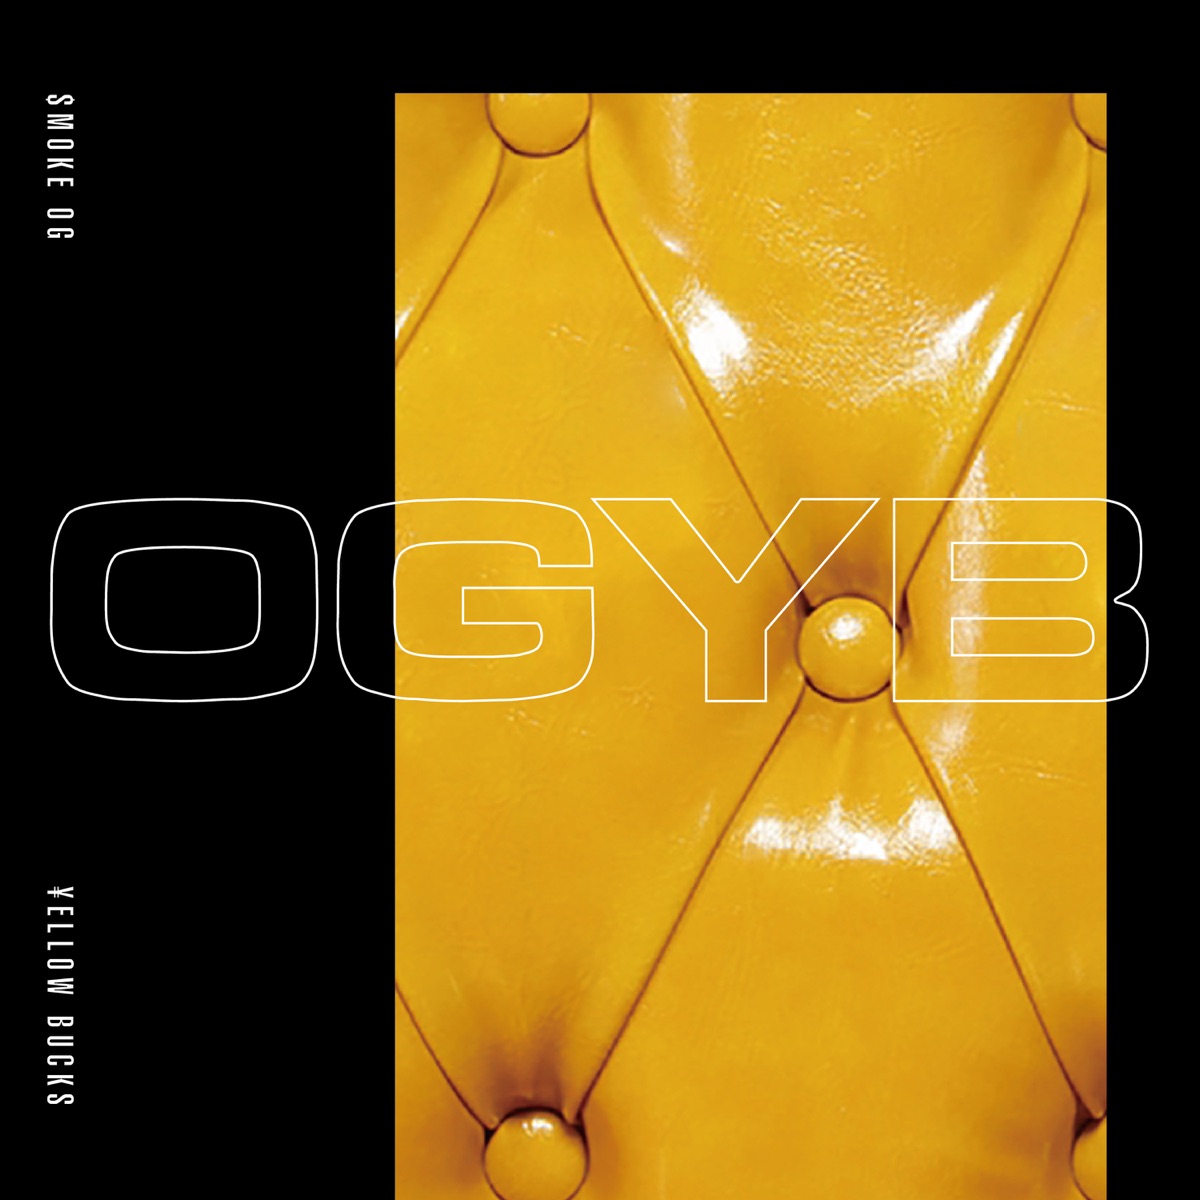 Cover art for『$MOKE OG - OGYB (feat. ¥ELLOW BUCKS)』from the release『OGYB (feat. ¥ELLOW BUCKS)